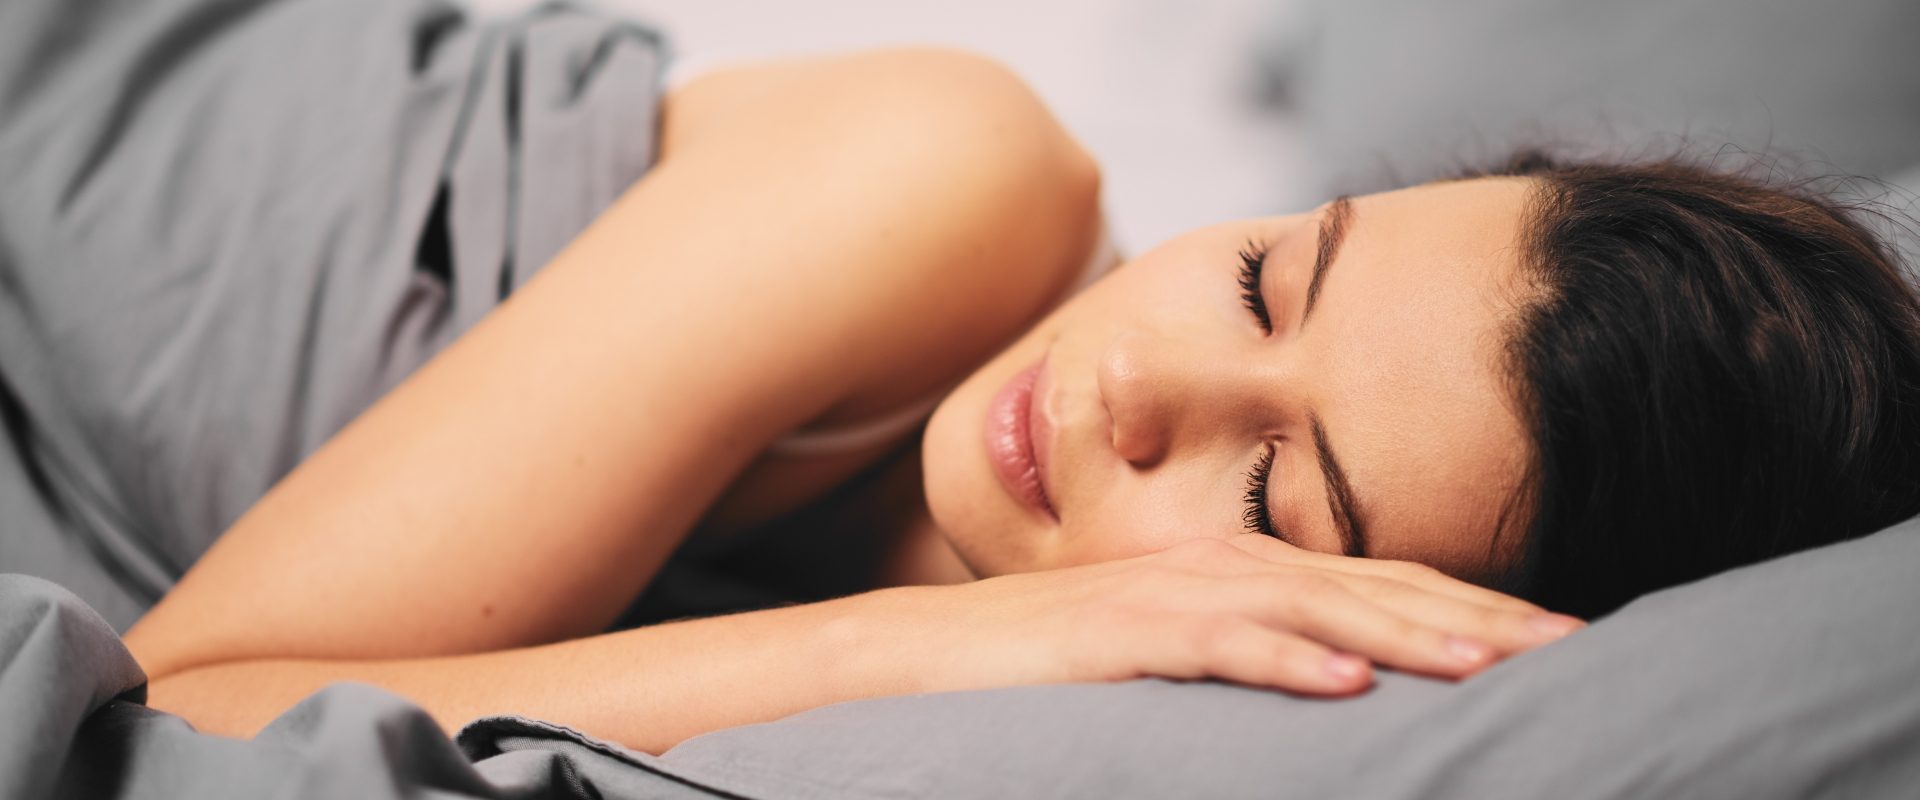 Fazy snu - jak wpływają na jego jakość? Jak zadbać o dobry sen? Kobieta śpiąca w łóżku w szarej pościeli.